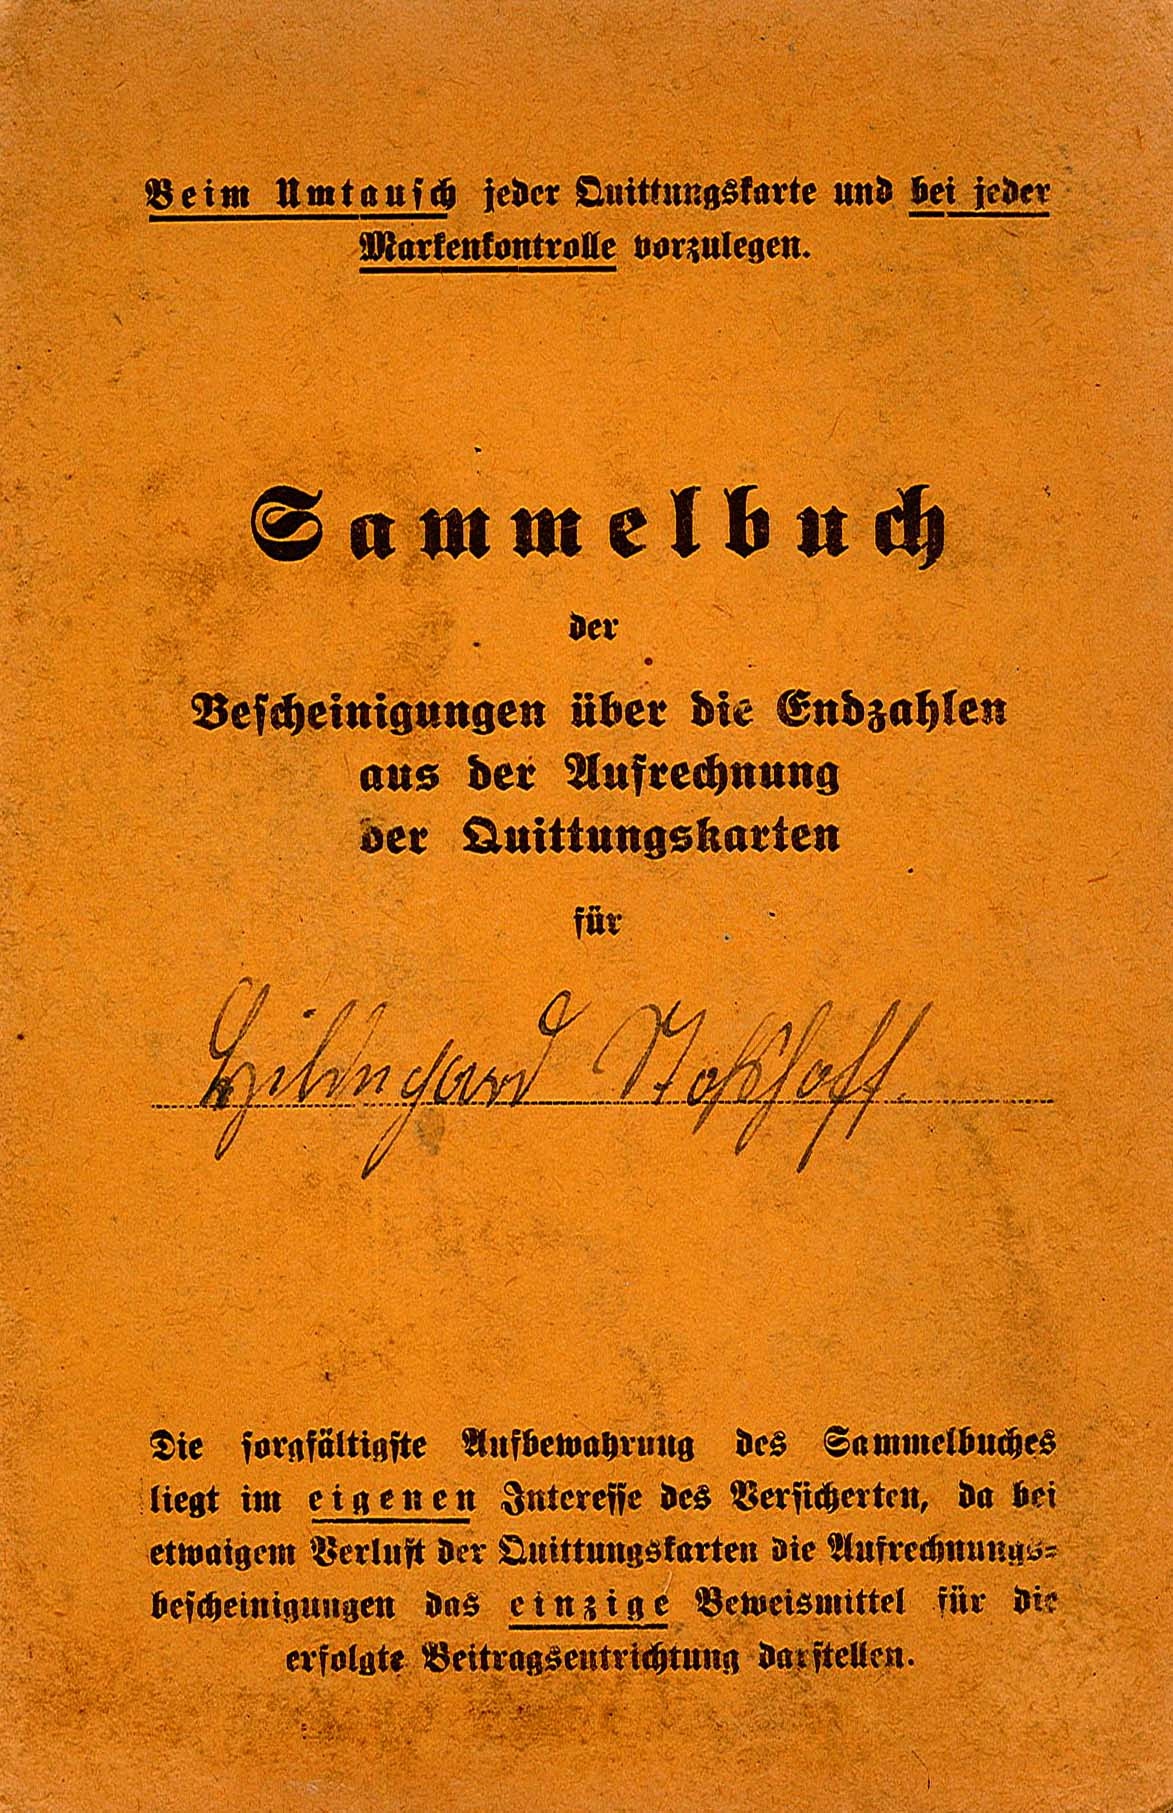 Quittungskarte zur Invalidenversicherung von Hildegard Stoshoff, 1940 (Museum Wolmirstedt RR-F)